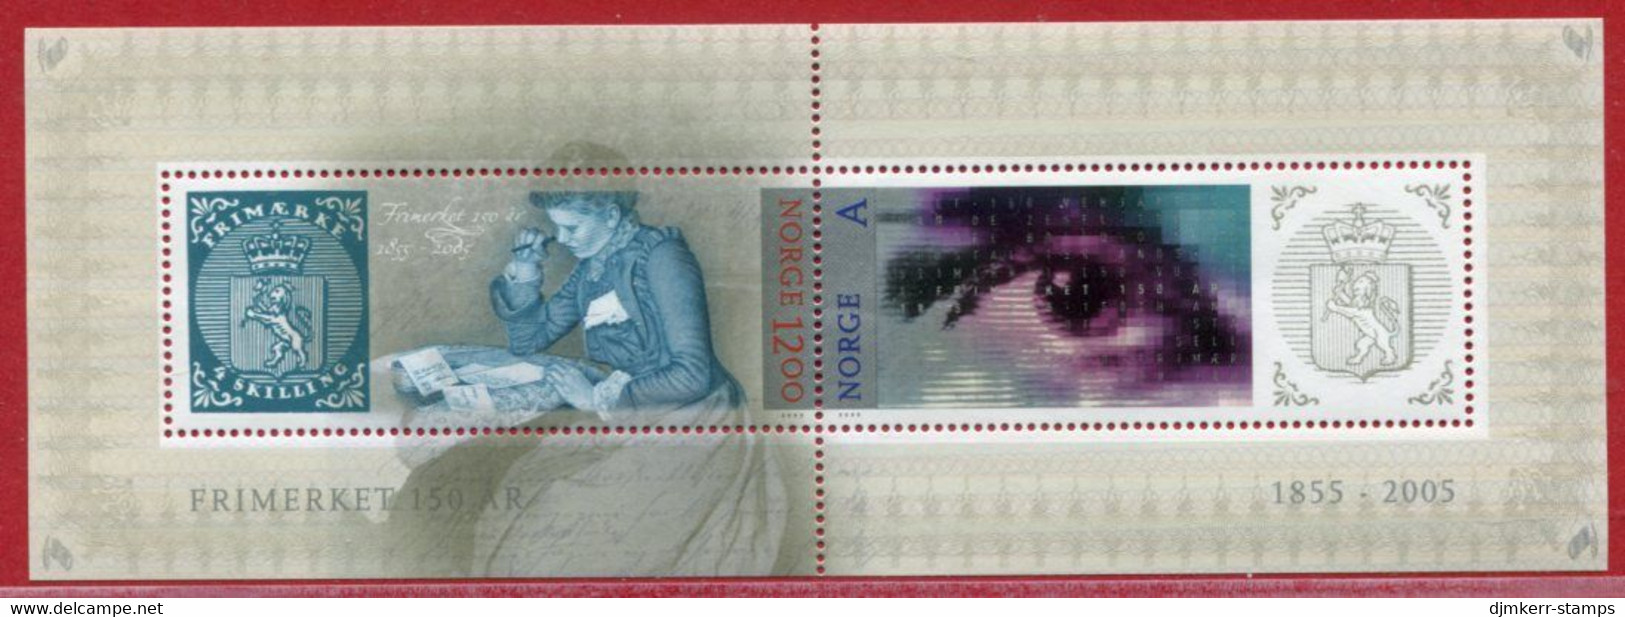 NORWAY 2005 Norwegian Stamp Anniversary Block MNH / **.  Michel  Block 29 - Nuovi